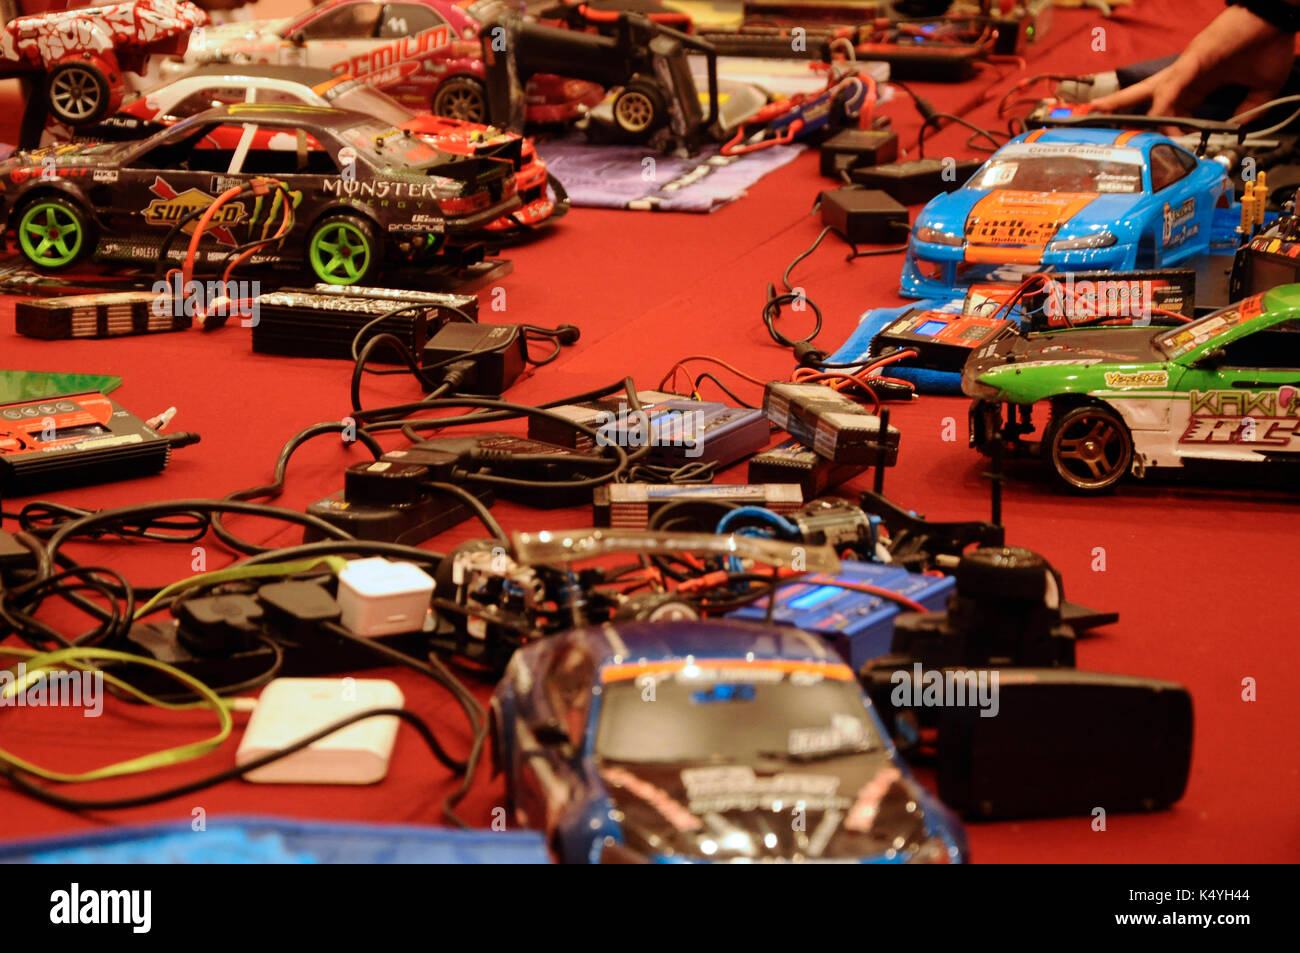 En serdang malasia -julio 30, 2016: control remoto personalizado de automóviles y sus componentes en la pantalla de la mesa roja. Foto de stock